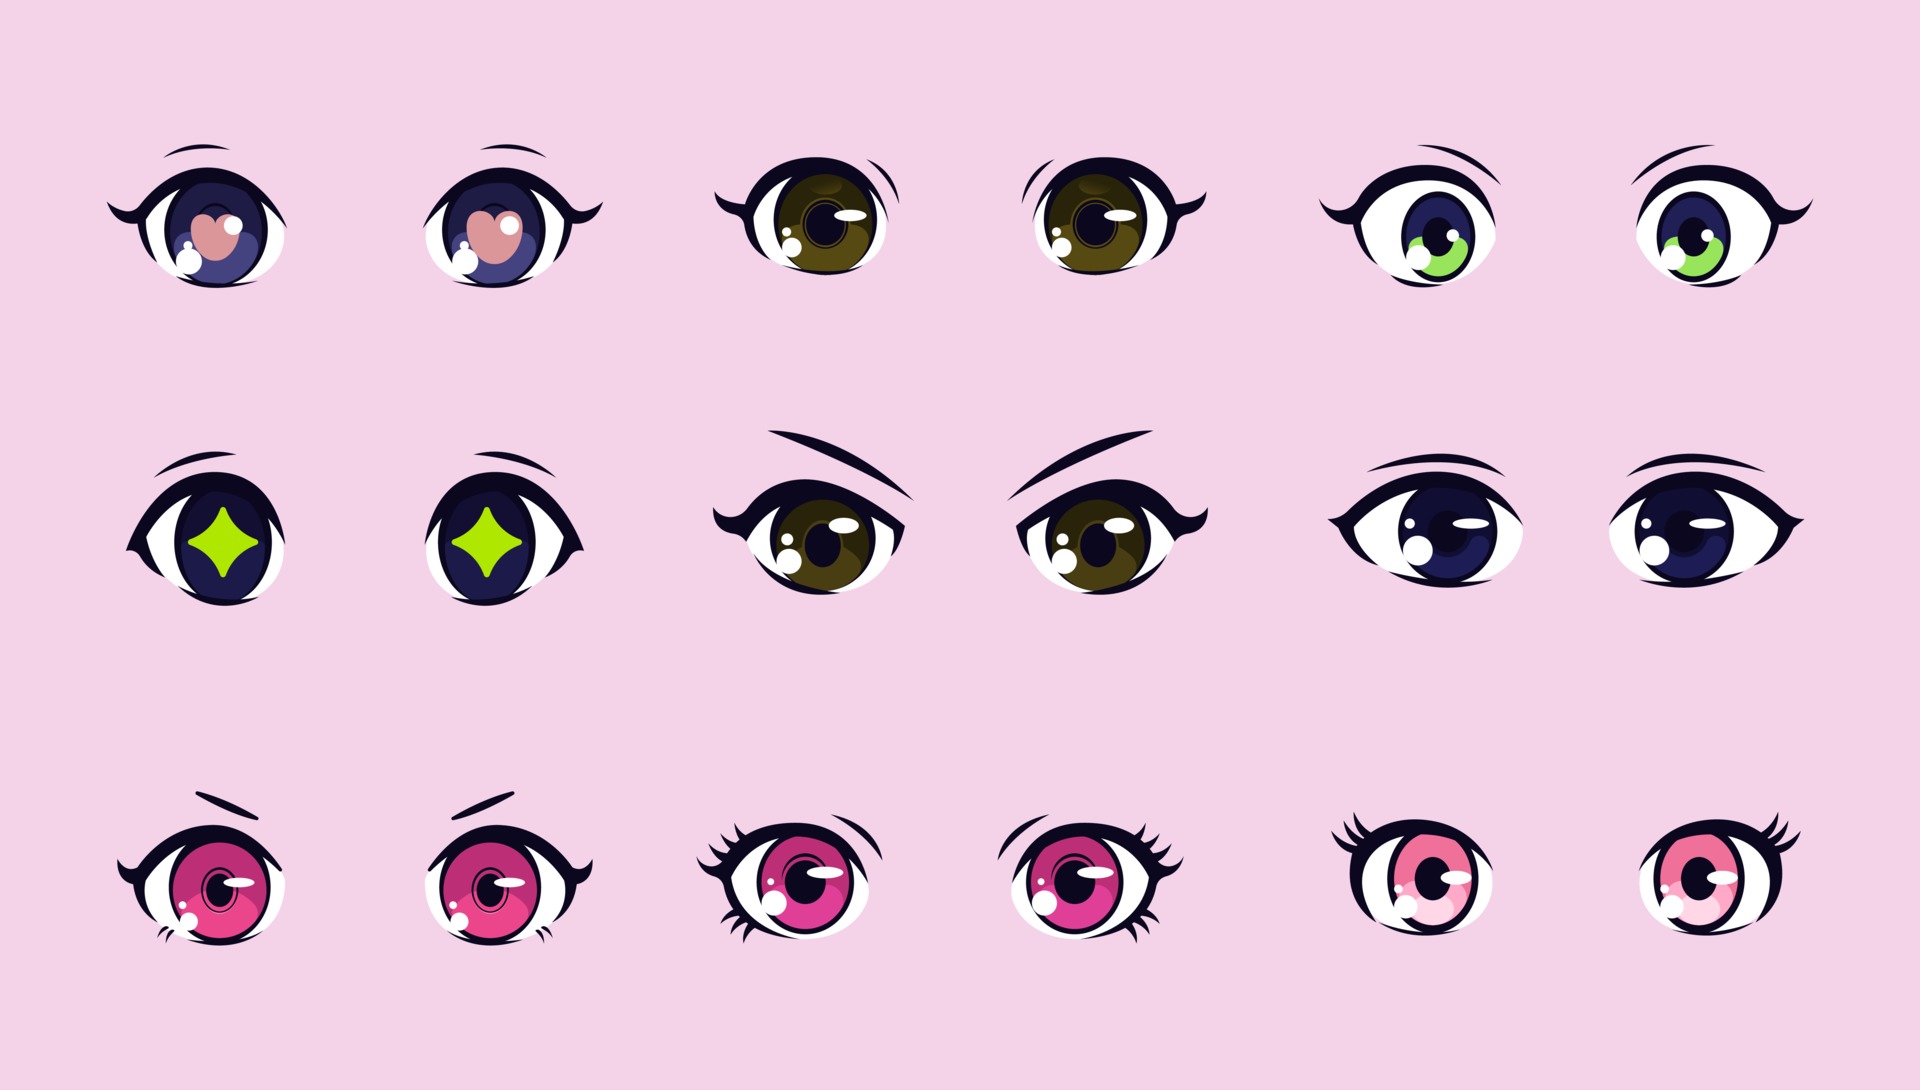 olho humano verde com pupila estreita no estilo mangá e anime. 15619099  Vetor no Vecteezy